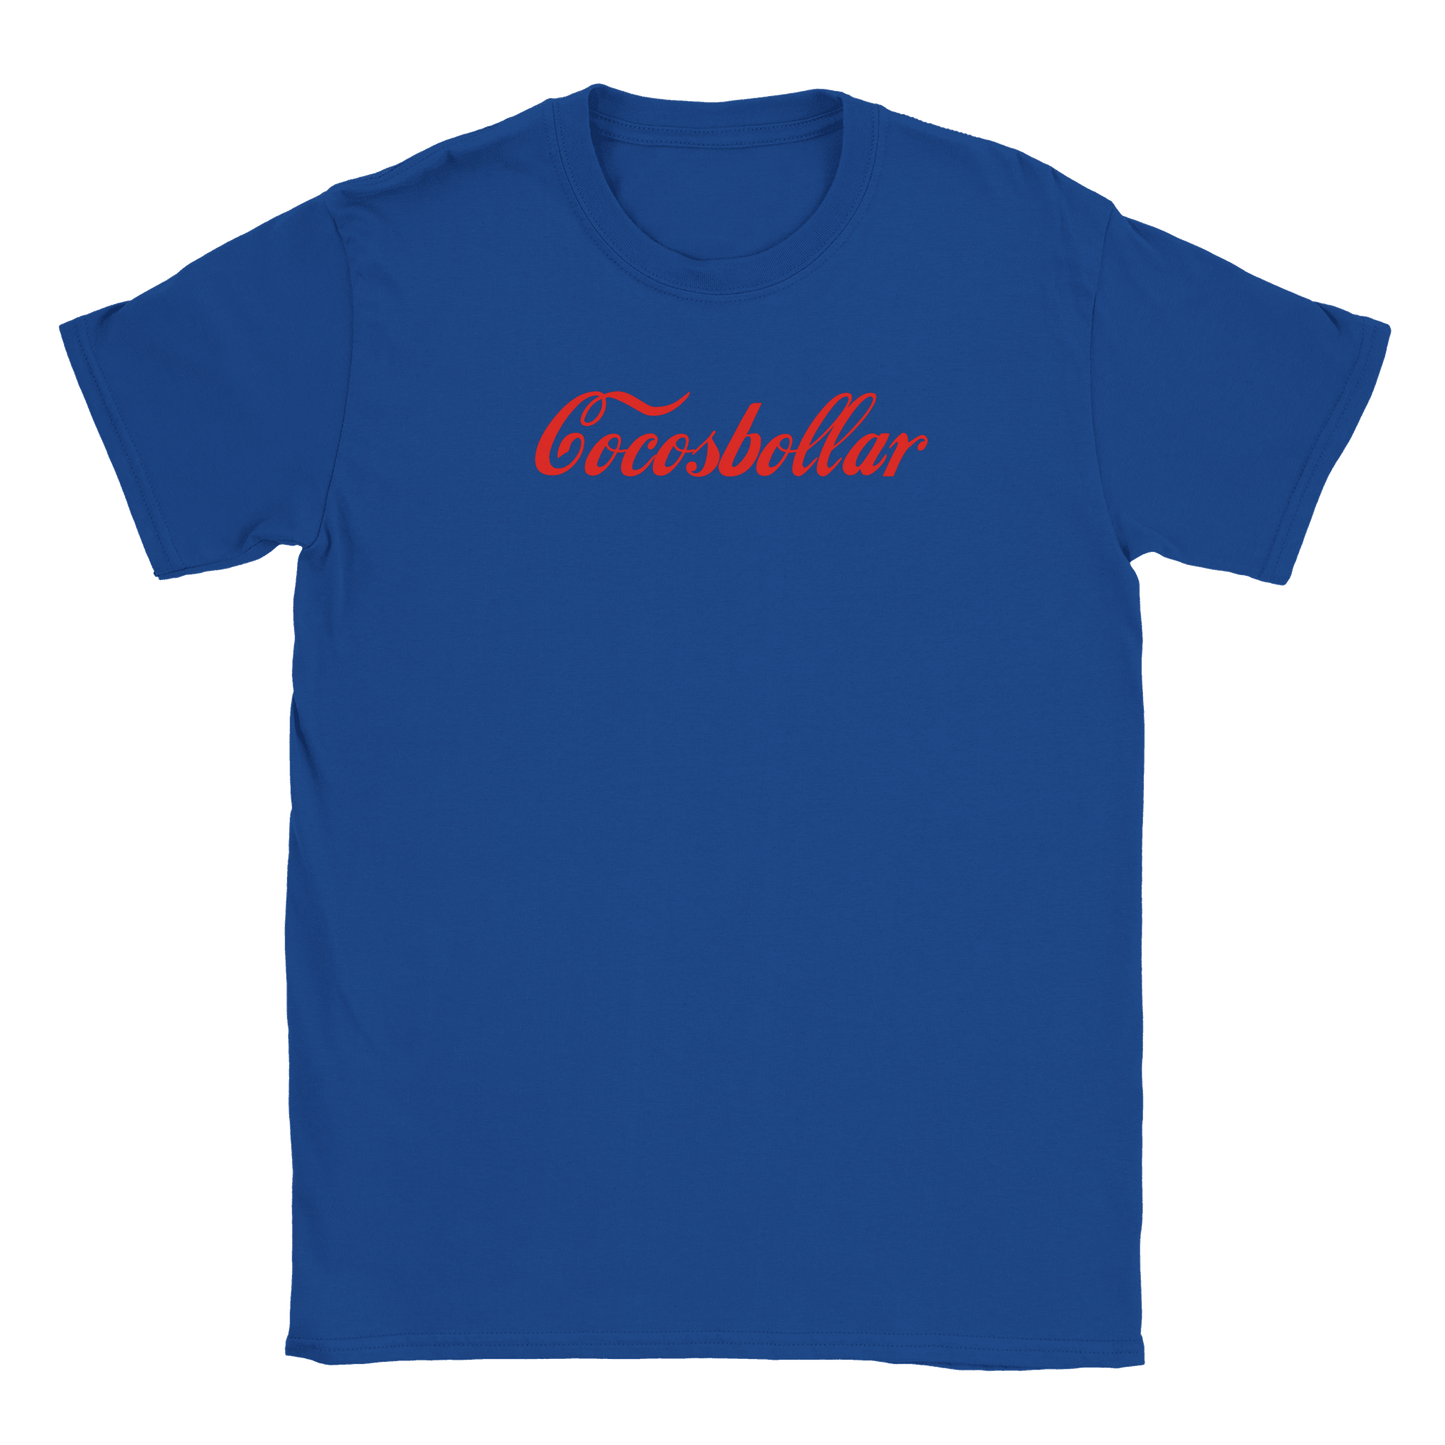 Cocosbollar - T-shirt Blå